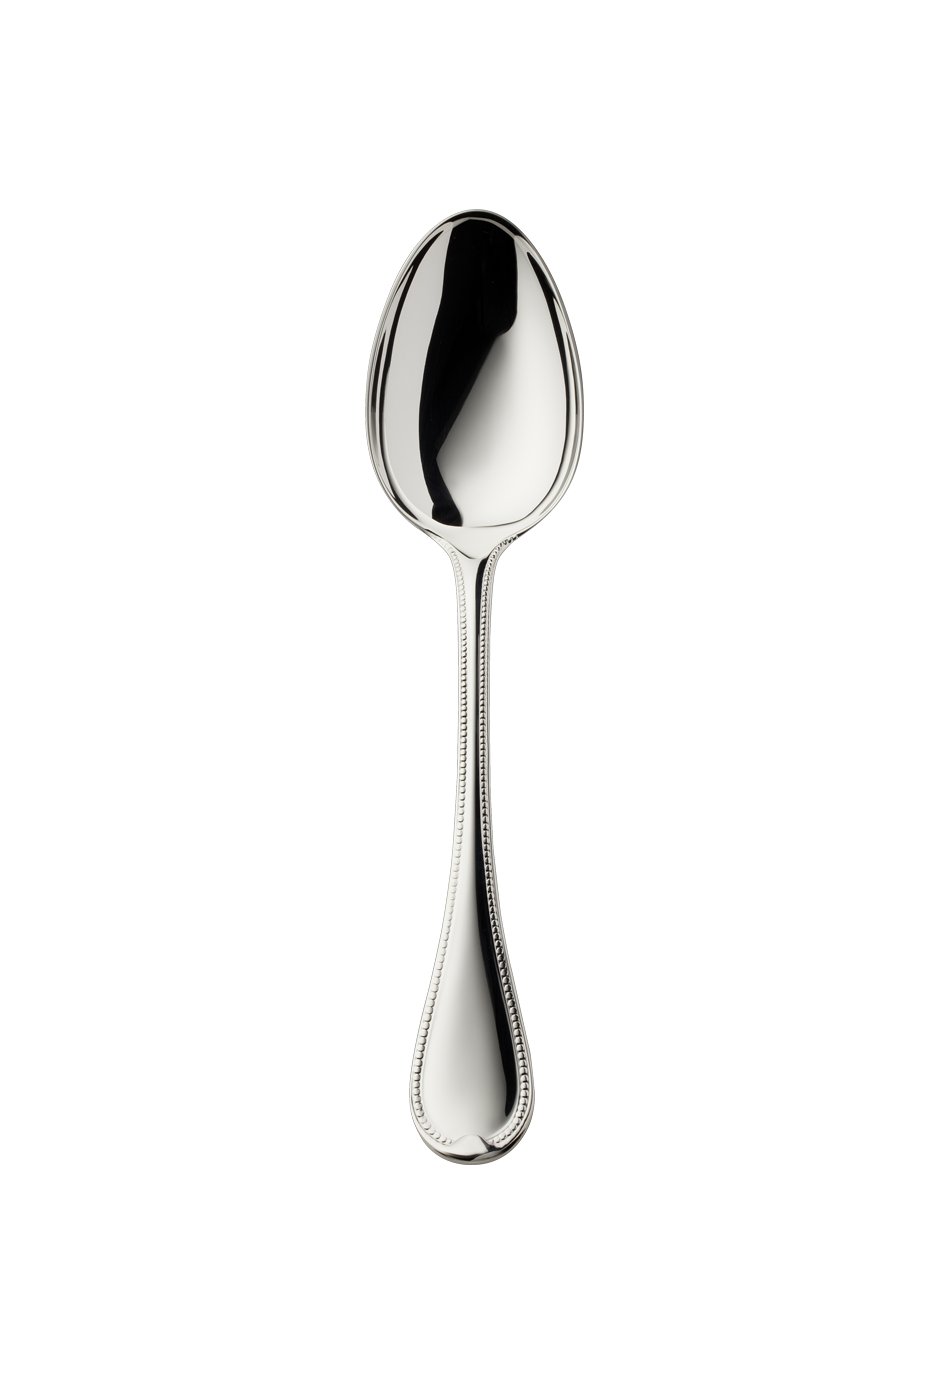 Französisch-Perl Menu Spoon (925 Sterling Silver)